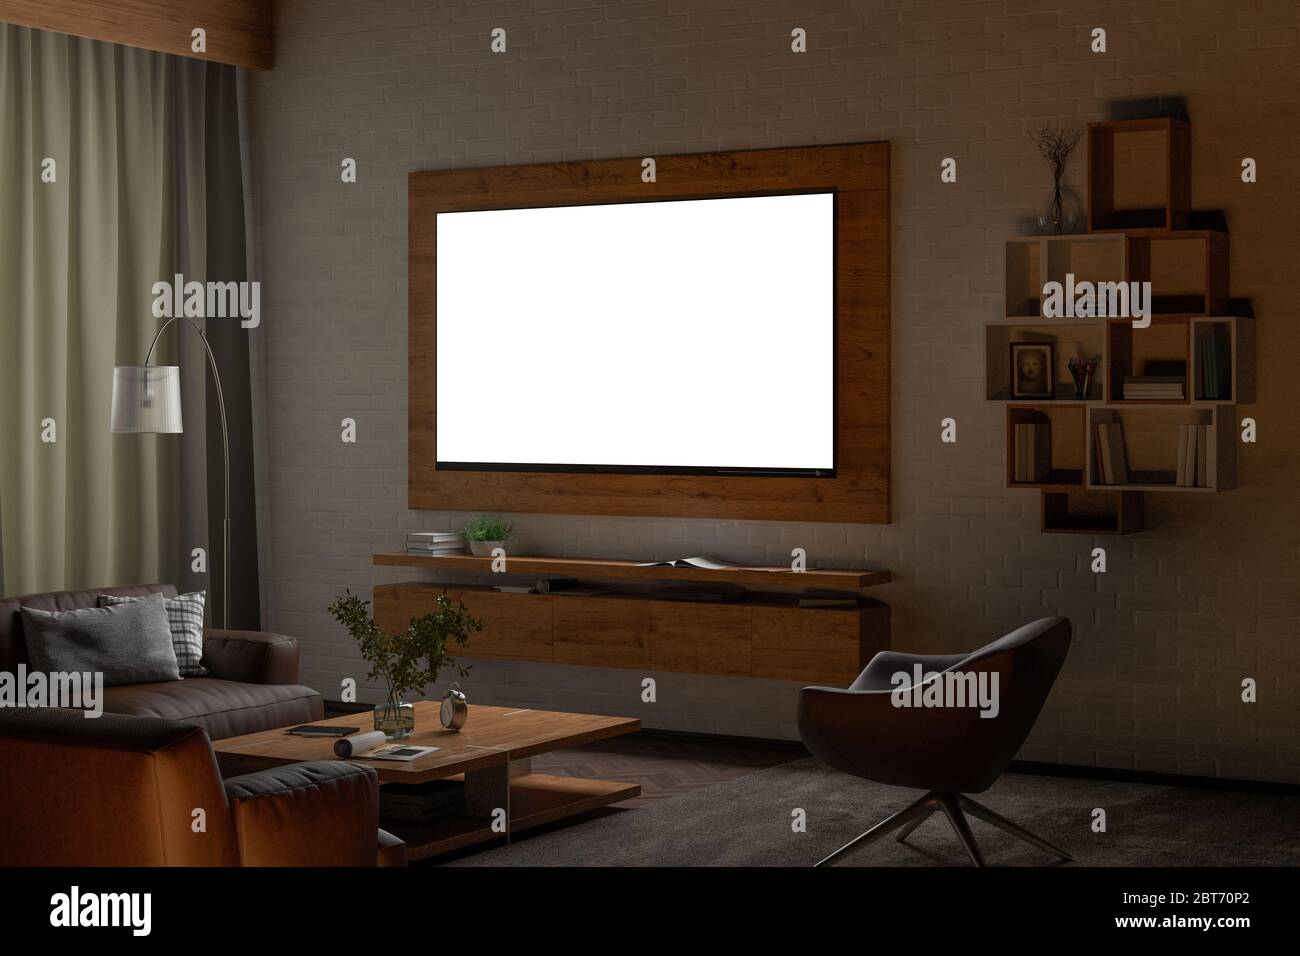 Téléviseur lumineux la nuit sur le mur de briques blanches du salon moderne. Masque autour de l'écran. illustration 3d Banque D'Images